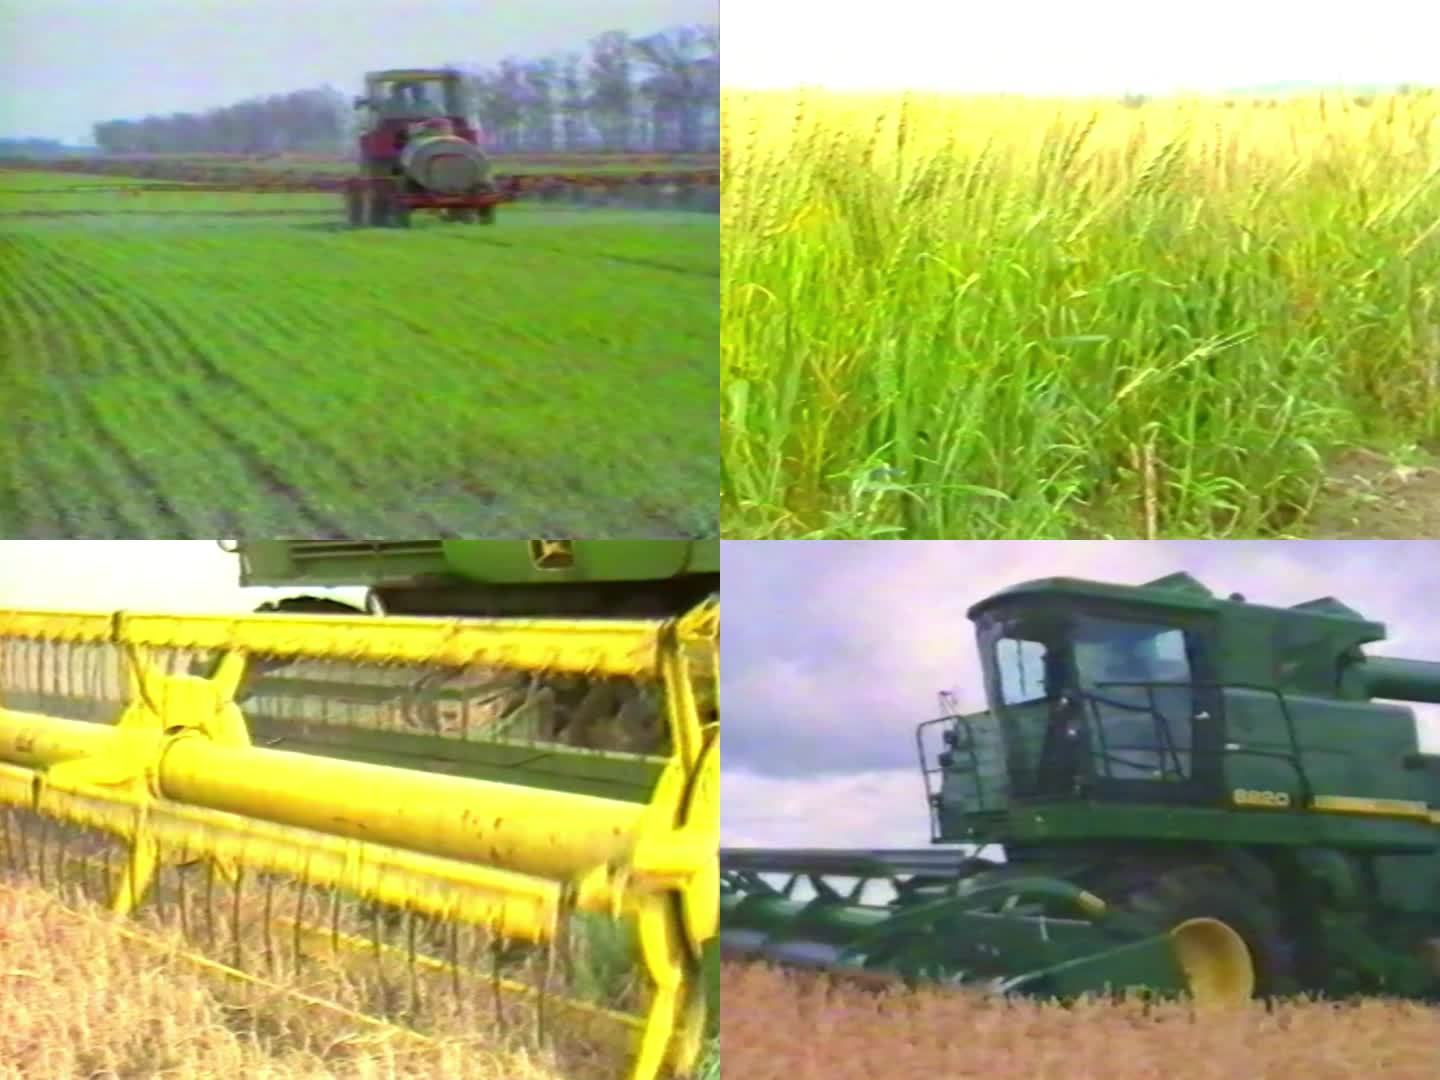 八九十年代农业机械化 农业大发展改革开放